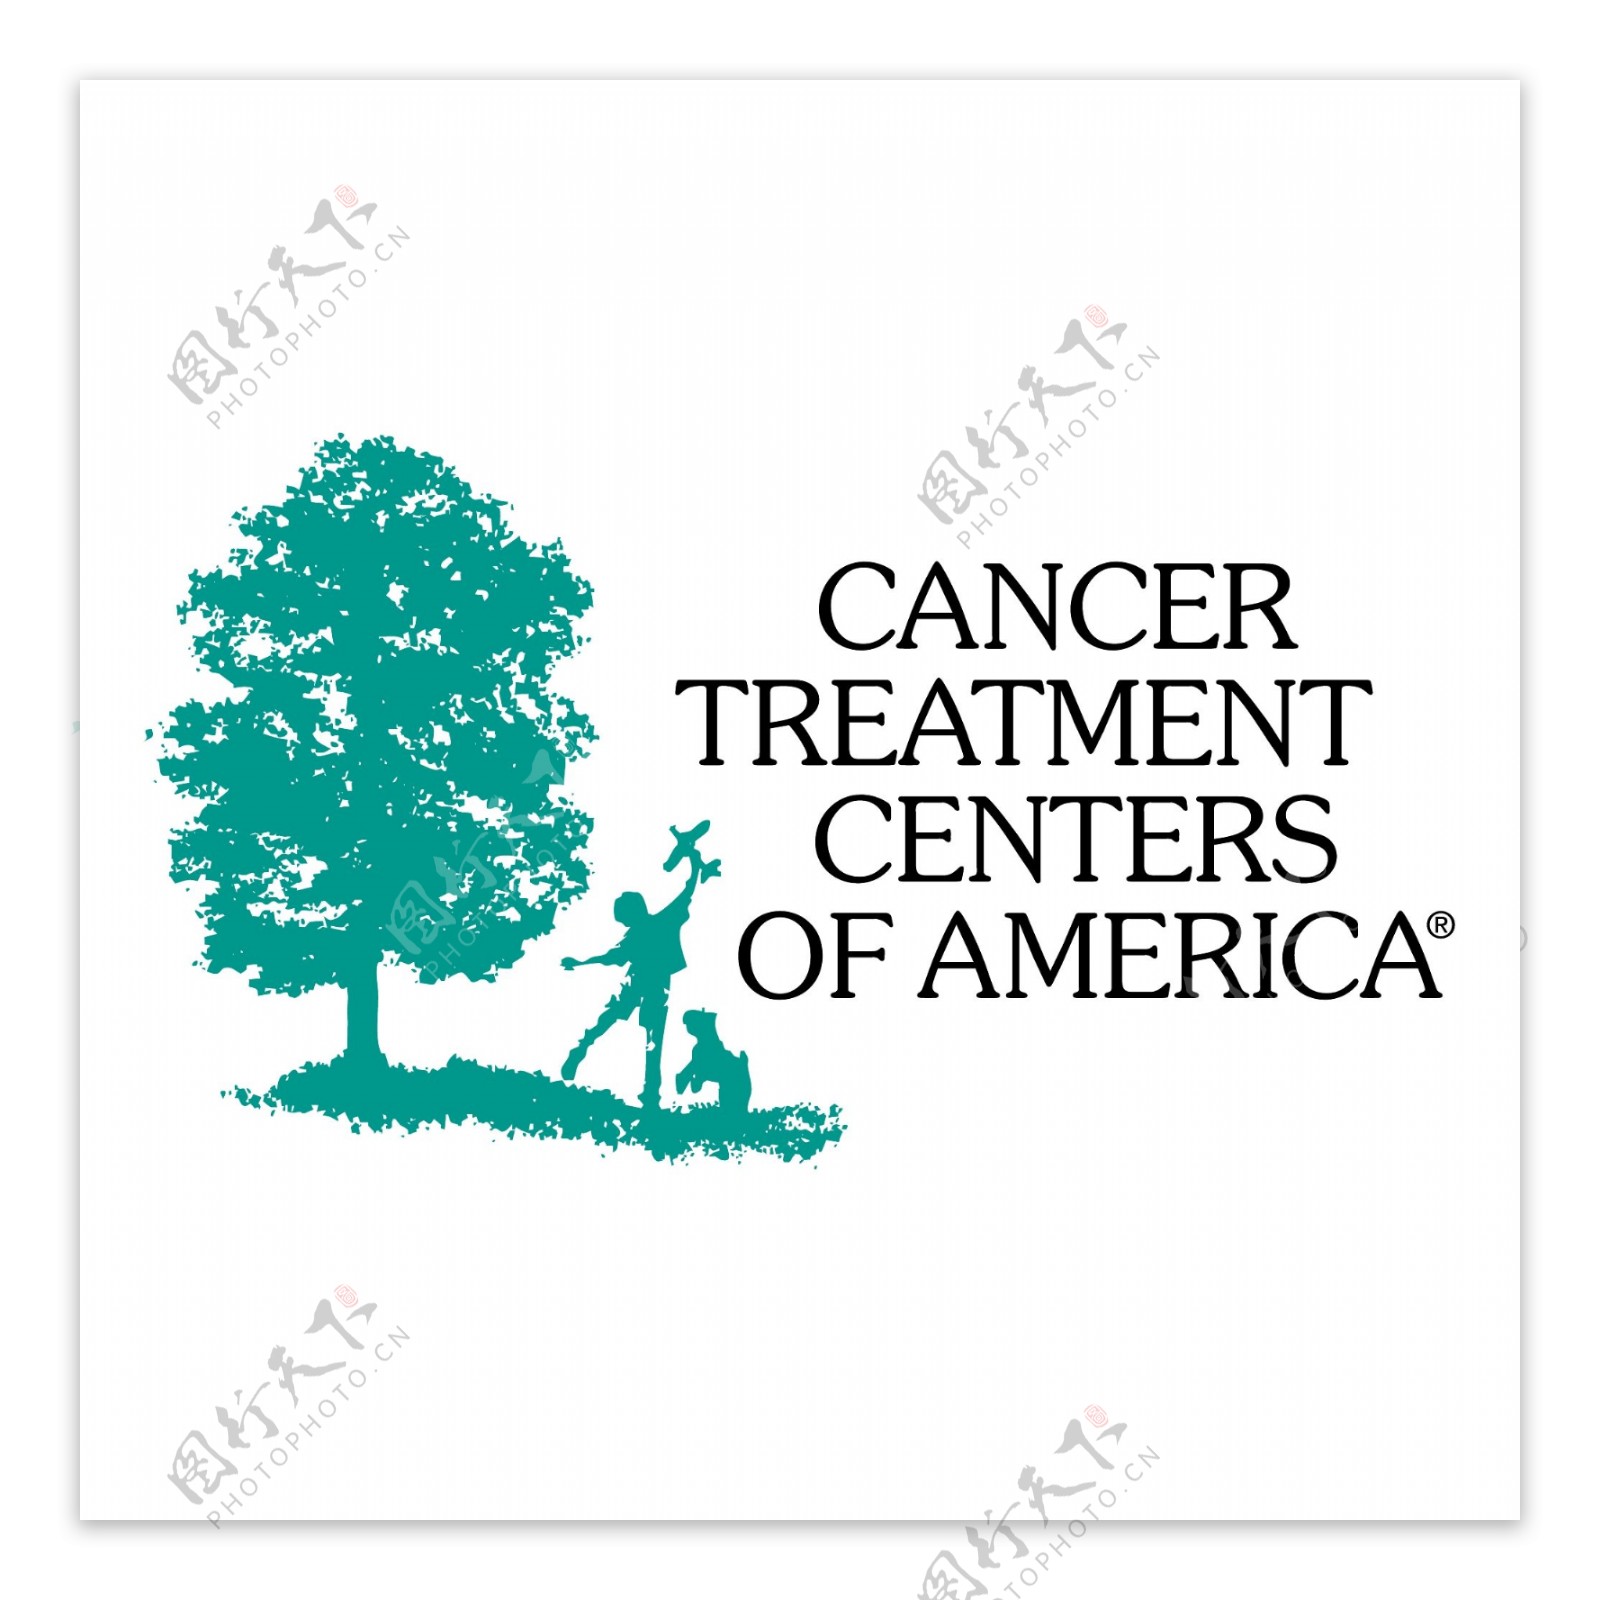 美国癌症治疗中心